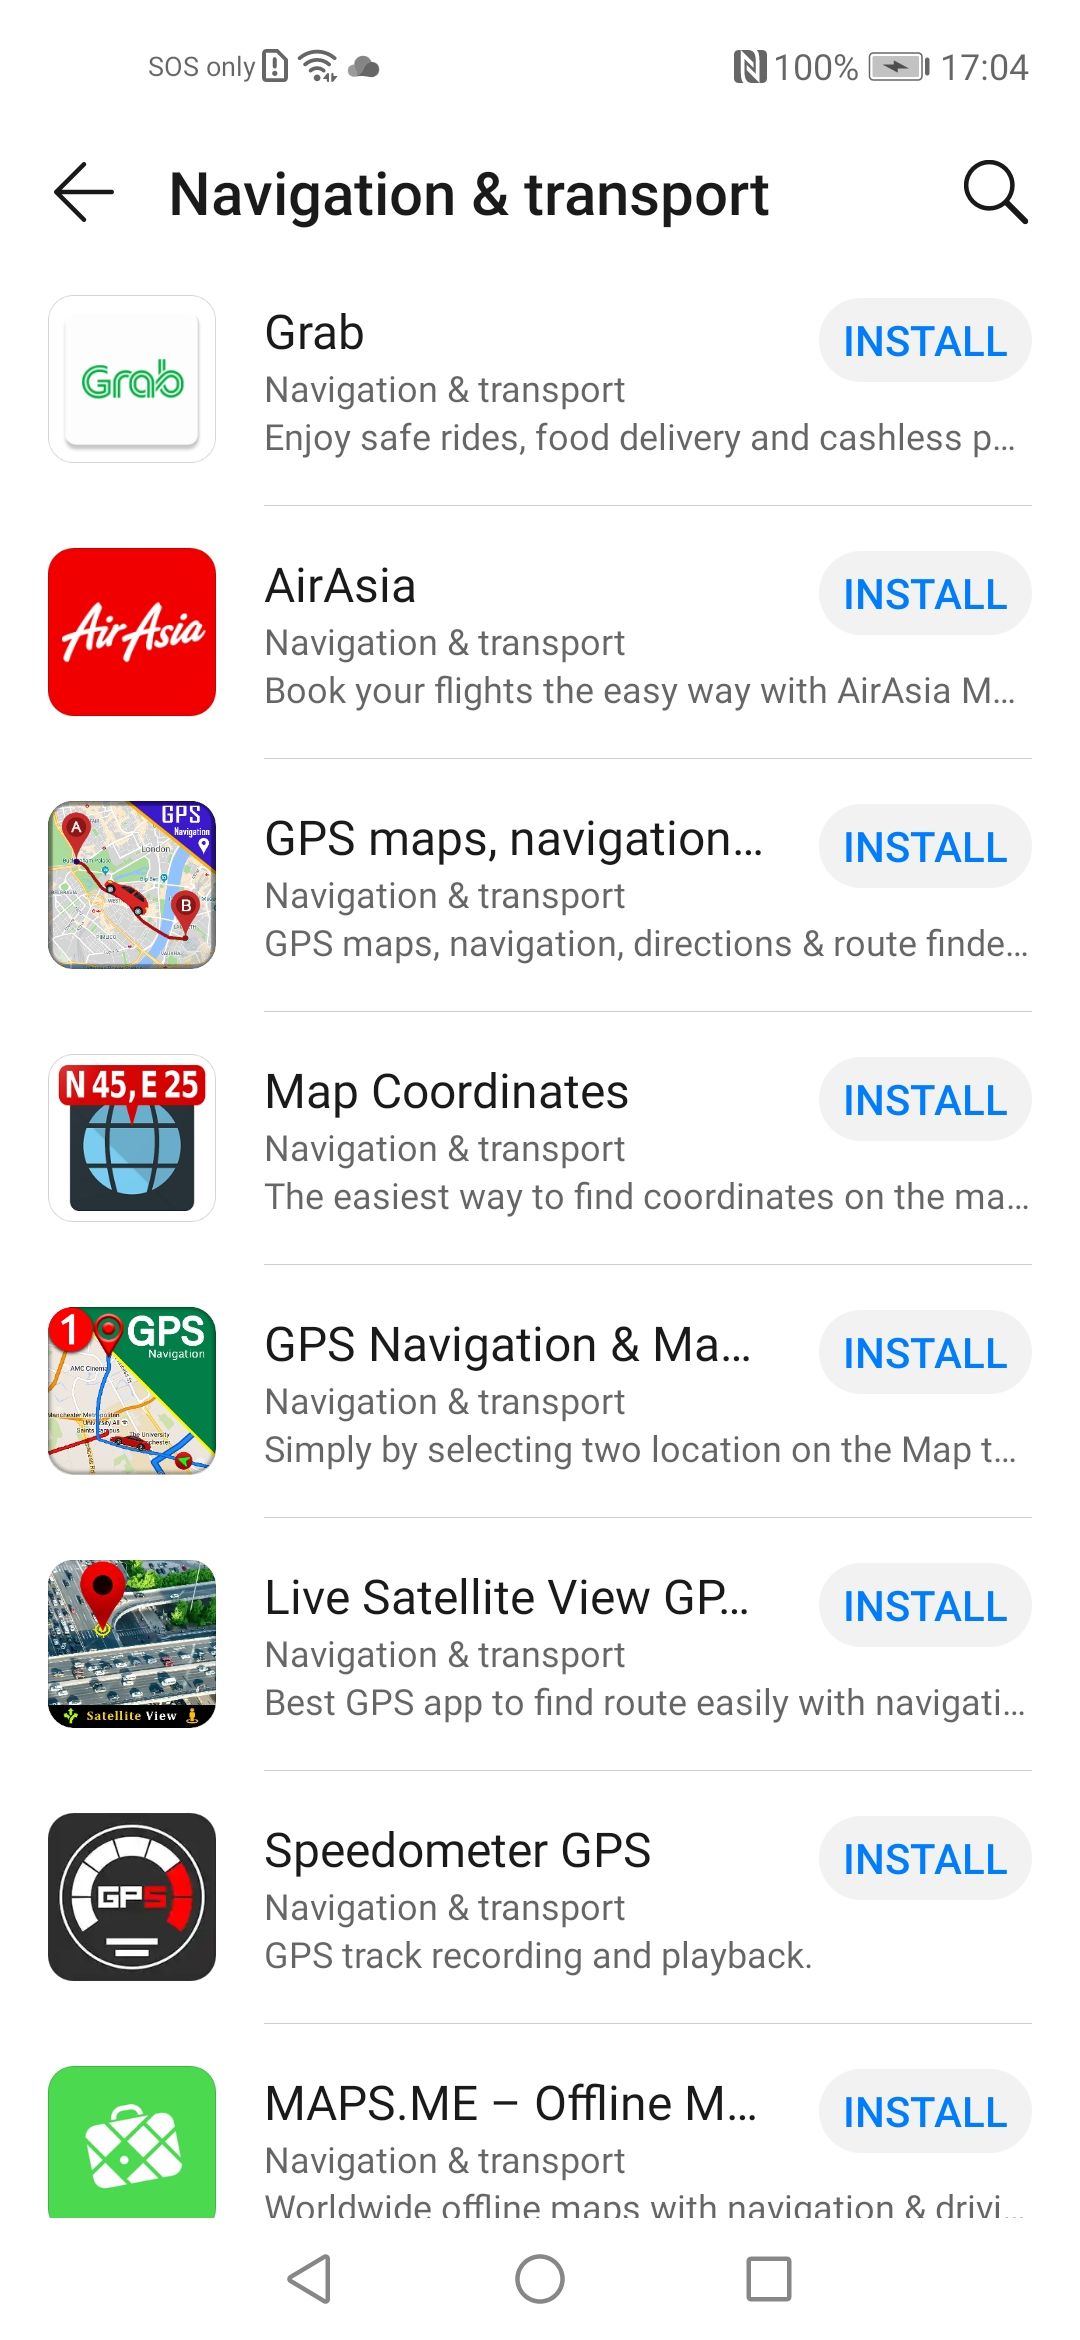 ทุกวันนี้ HUAWEI AppGallery มีแอปยอดนิยมจาก Google Play Store เพียงพอต่อความต้องการแล้วหรือยัง ?